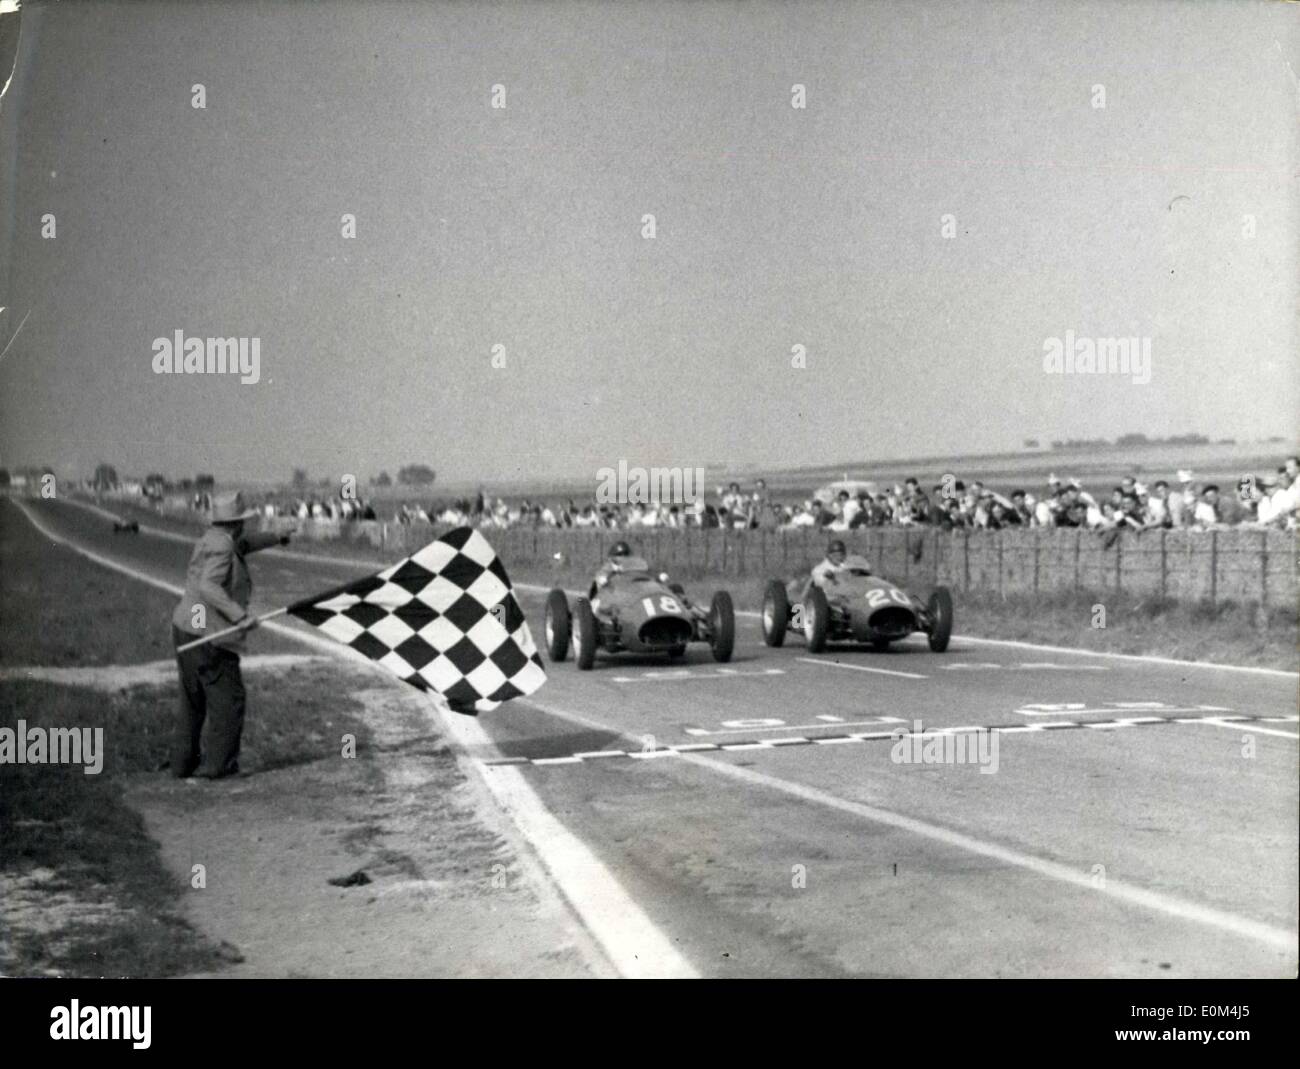 Juillet 06, 1953 - L'anglais Hawthorn remporte le grand prix de l'A.C.F. : Fangio 2e -- Gonzales 3ème. L'arrivée de Fangio (N I8) au volant d'une Maserati I et de Gonzales sur Maserati II. Banque D'Images